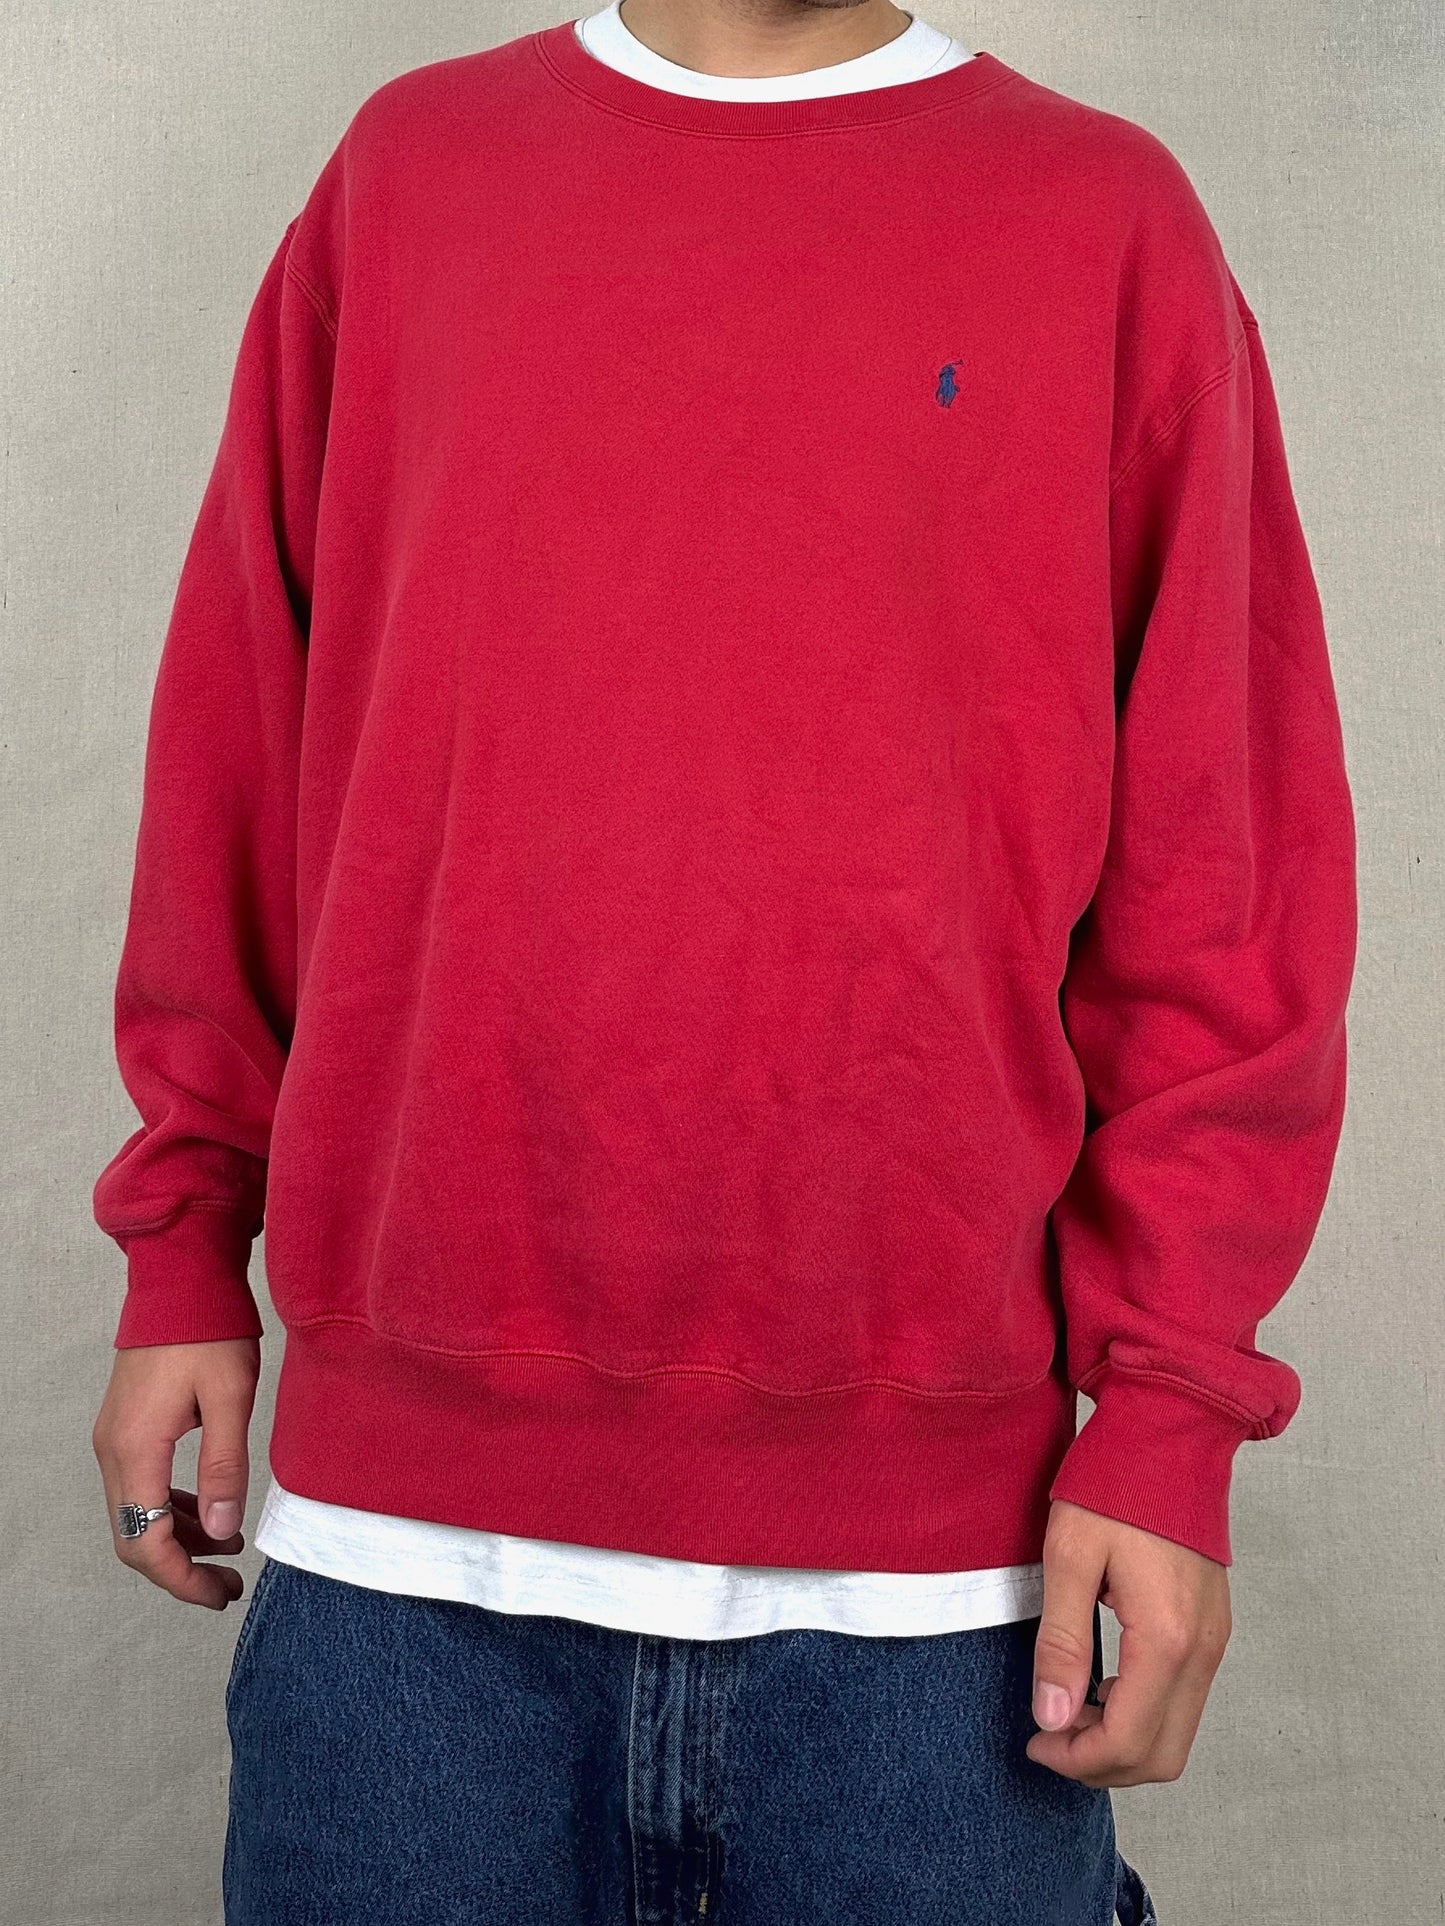 90's Ralph Lauren Embroidered Vintage Sweatshirt Size L-XL